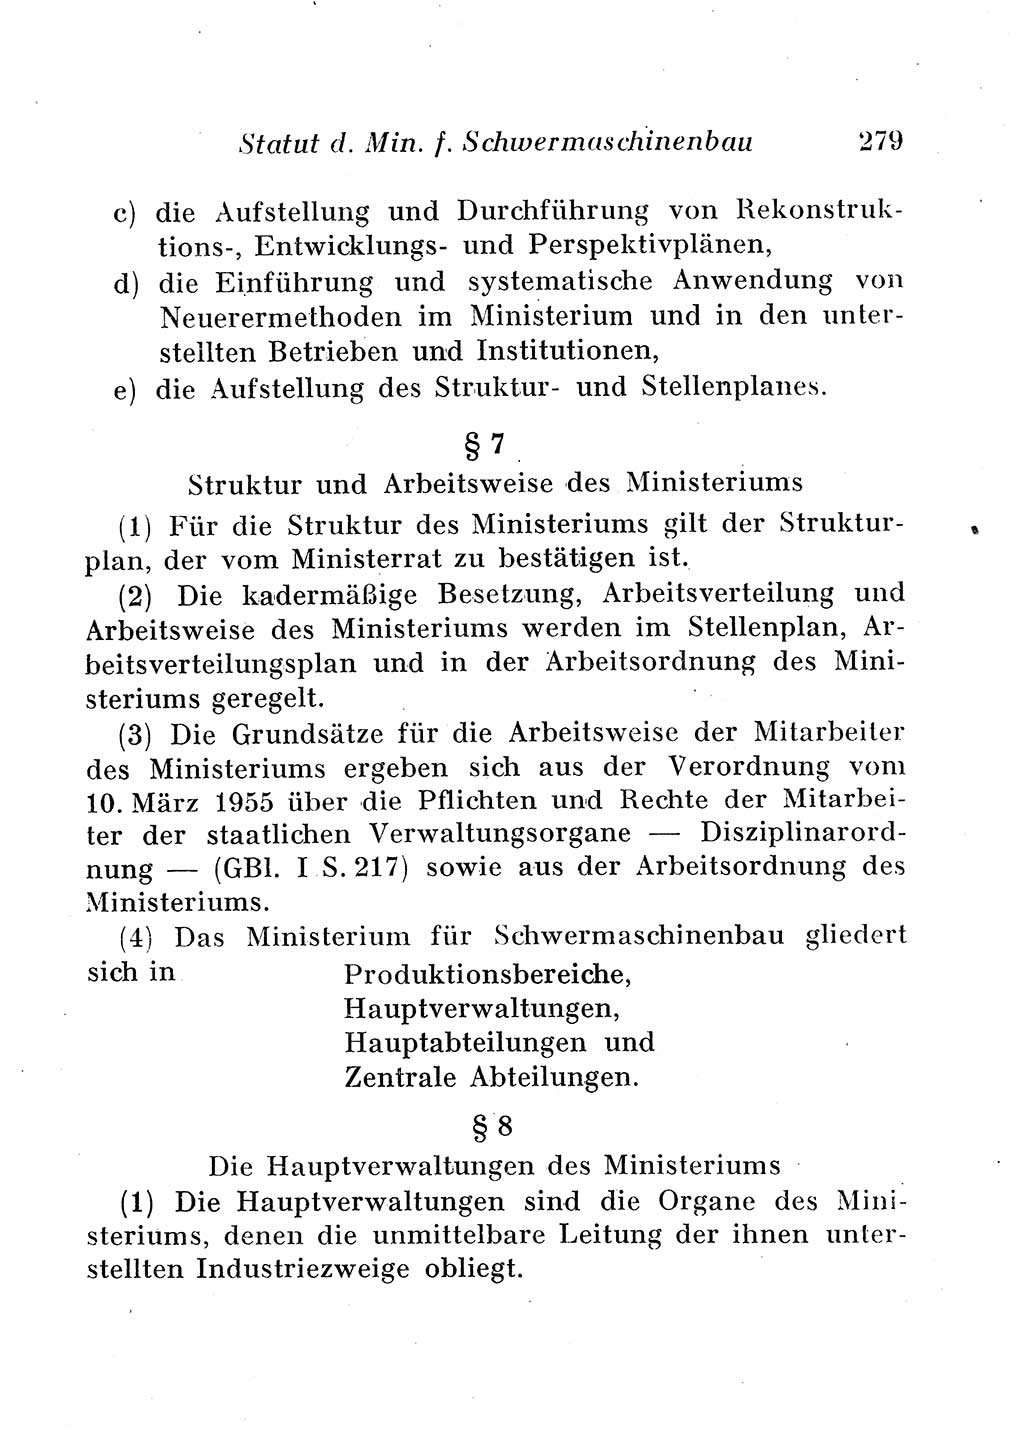 Staats- und verwaltungsrechtliche Gesetze der Deutschen Demokratischen Republik (DDR) 1958, Seite 279 (StVerwR Ges. DDR 1958, S. 279)